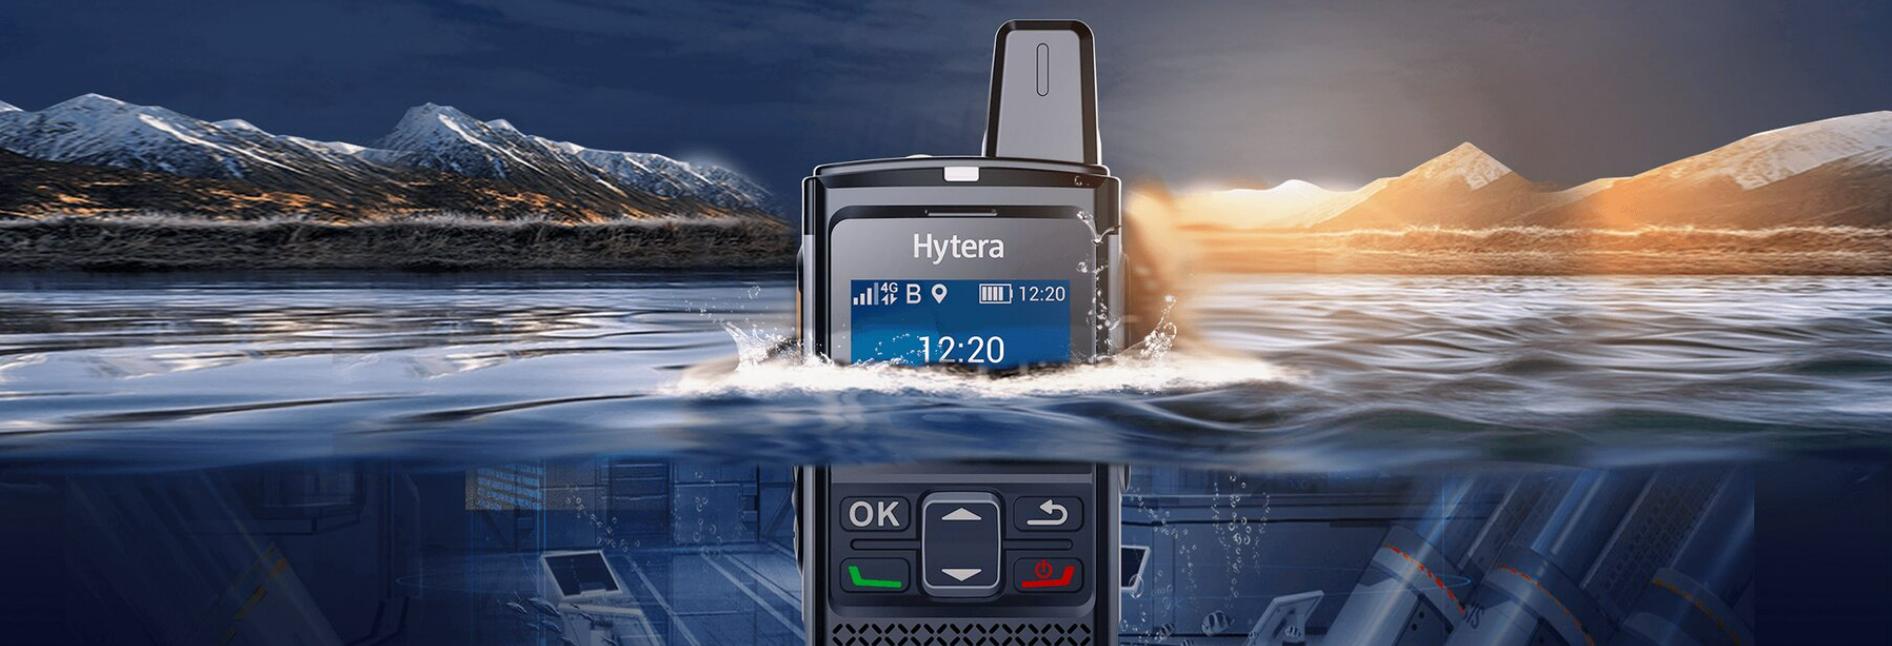 Hytera PoC radio